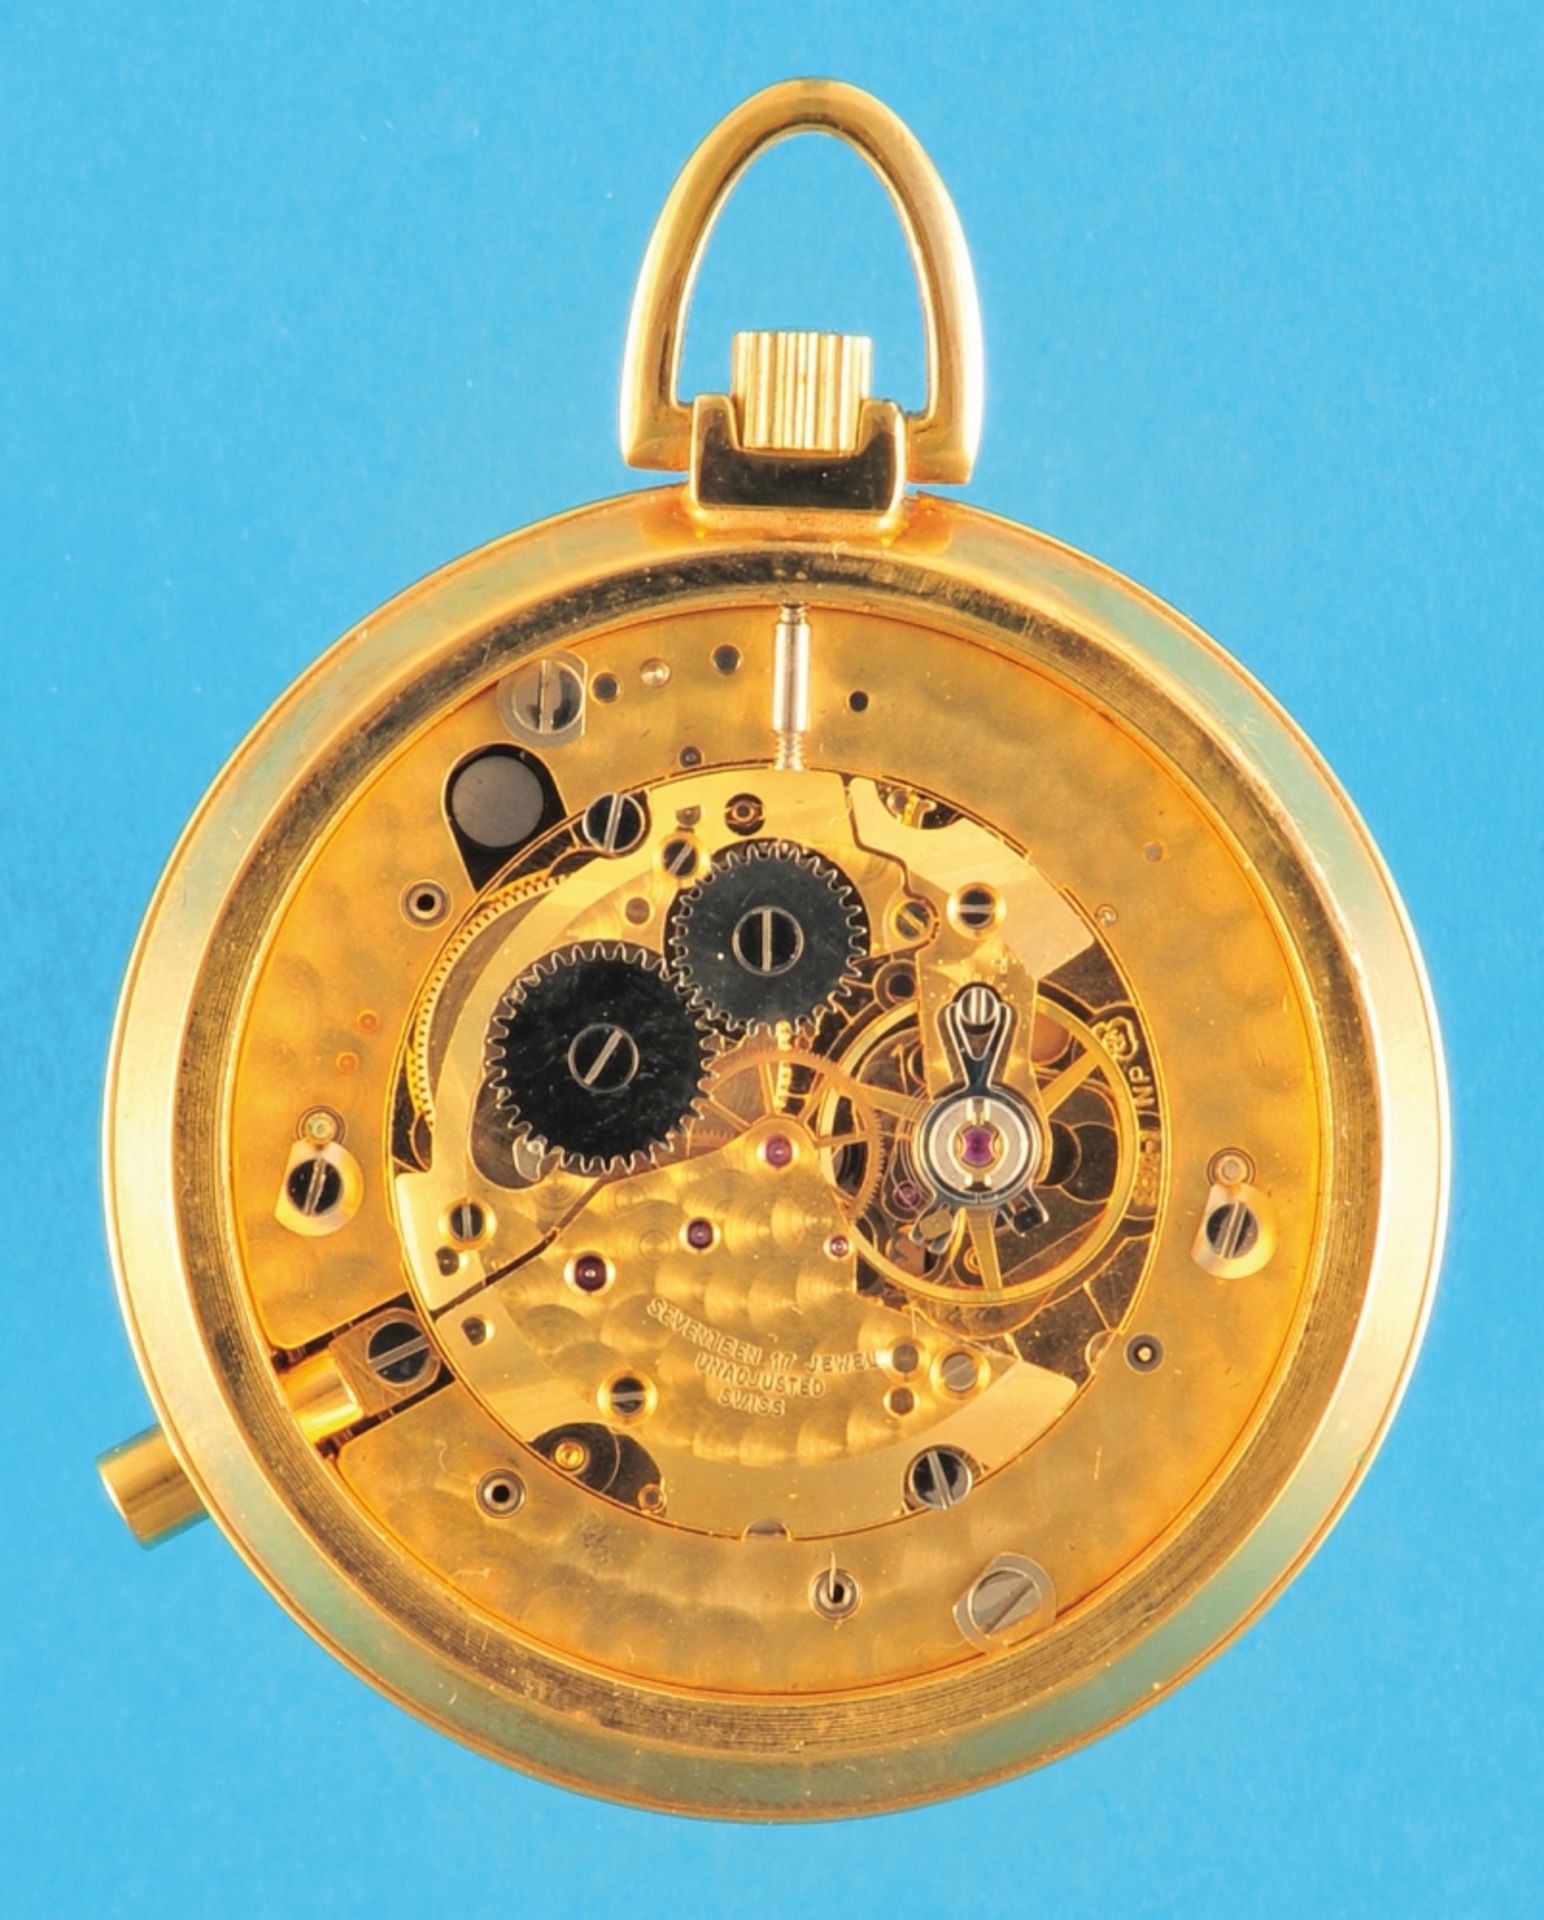 Dèesse, La-Chaux-de-Fonds, gold-plated pocket watch